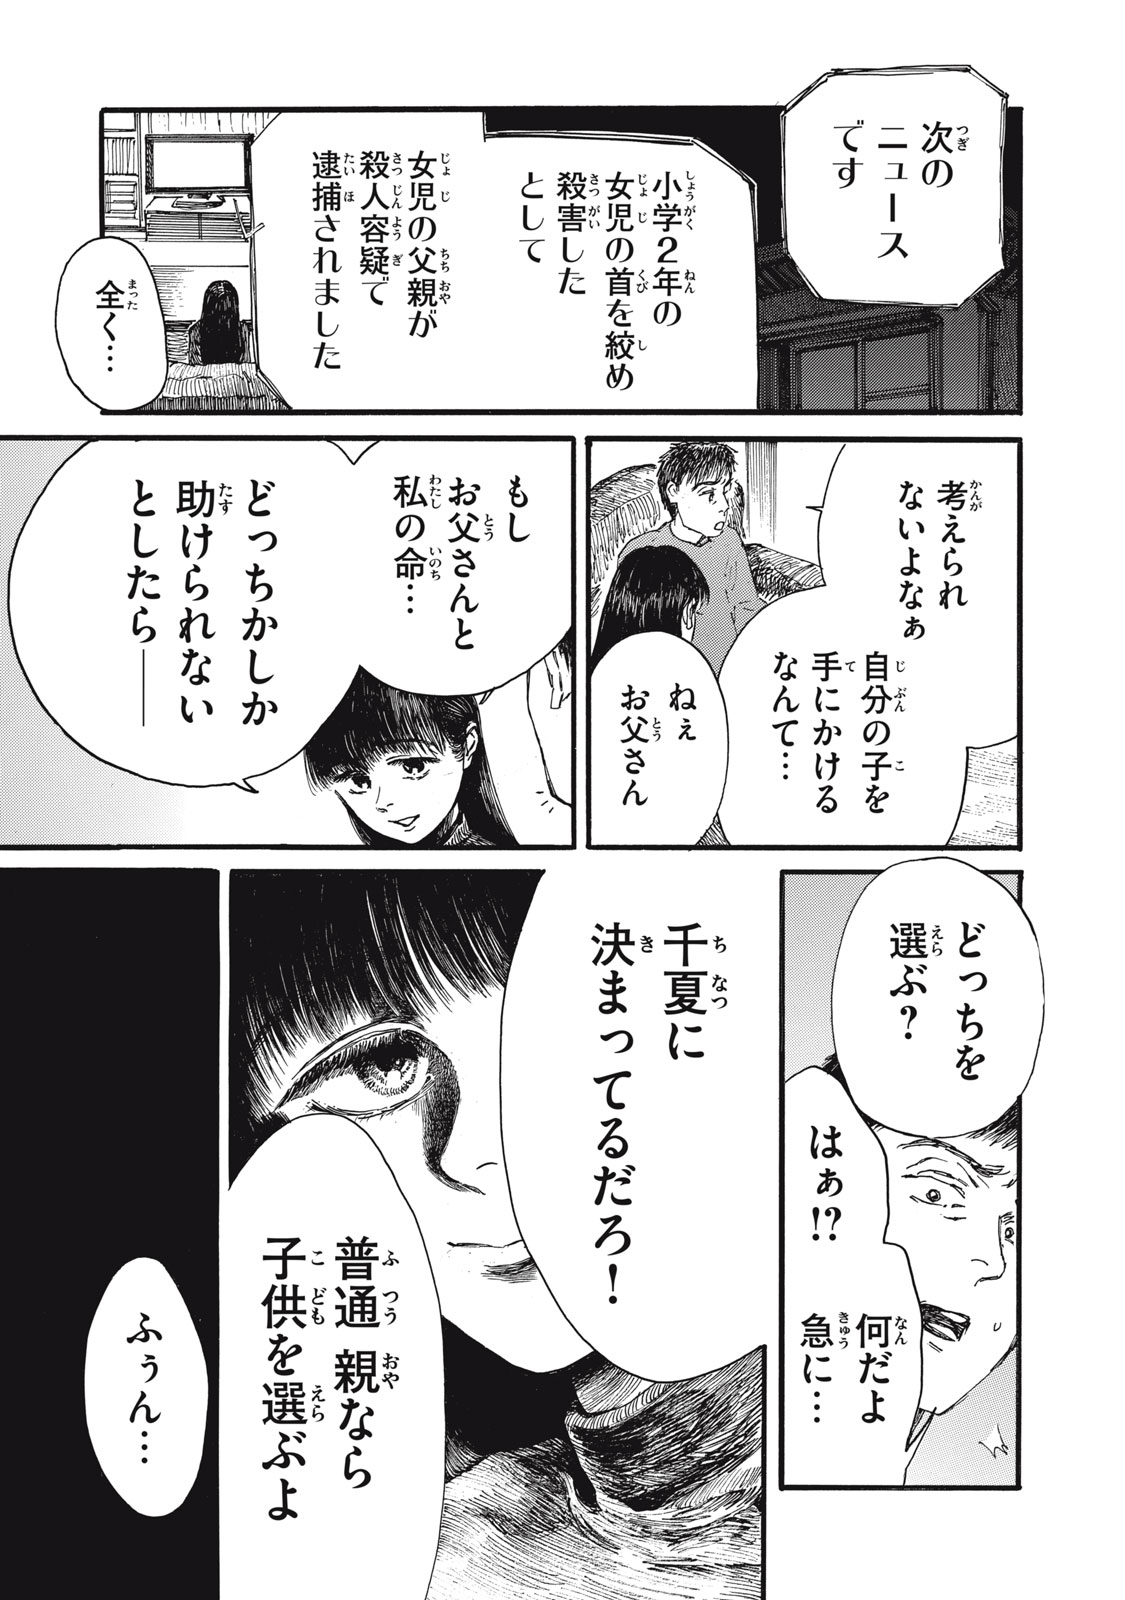 Watashi no Hara no Naka no Bakemono - Chapter 39 - Page 6